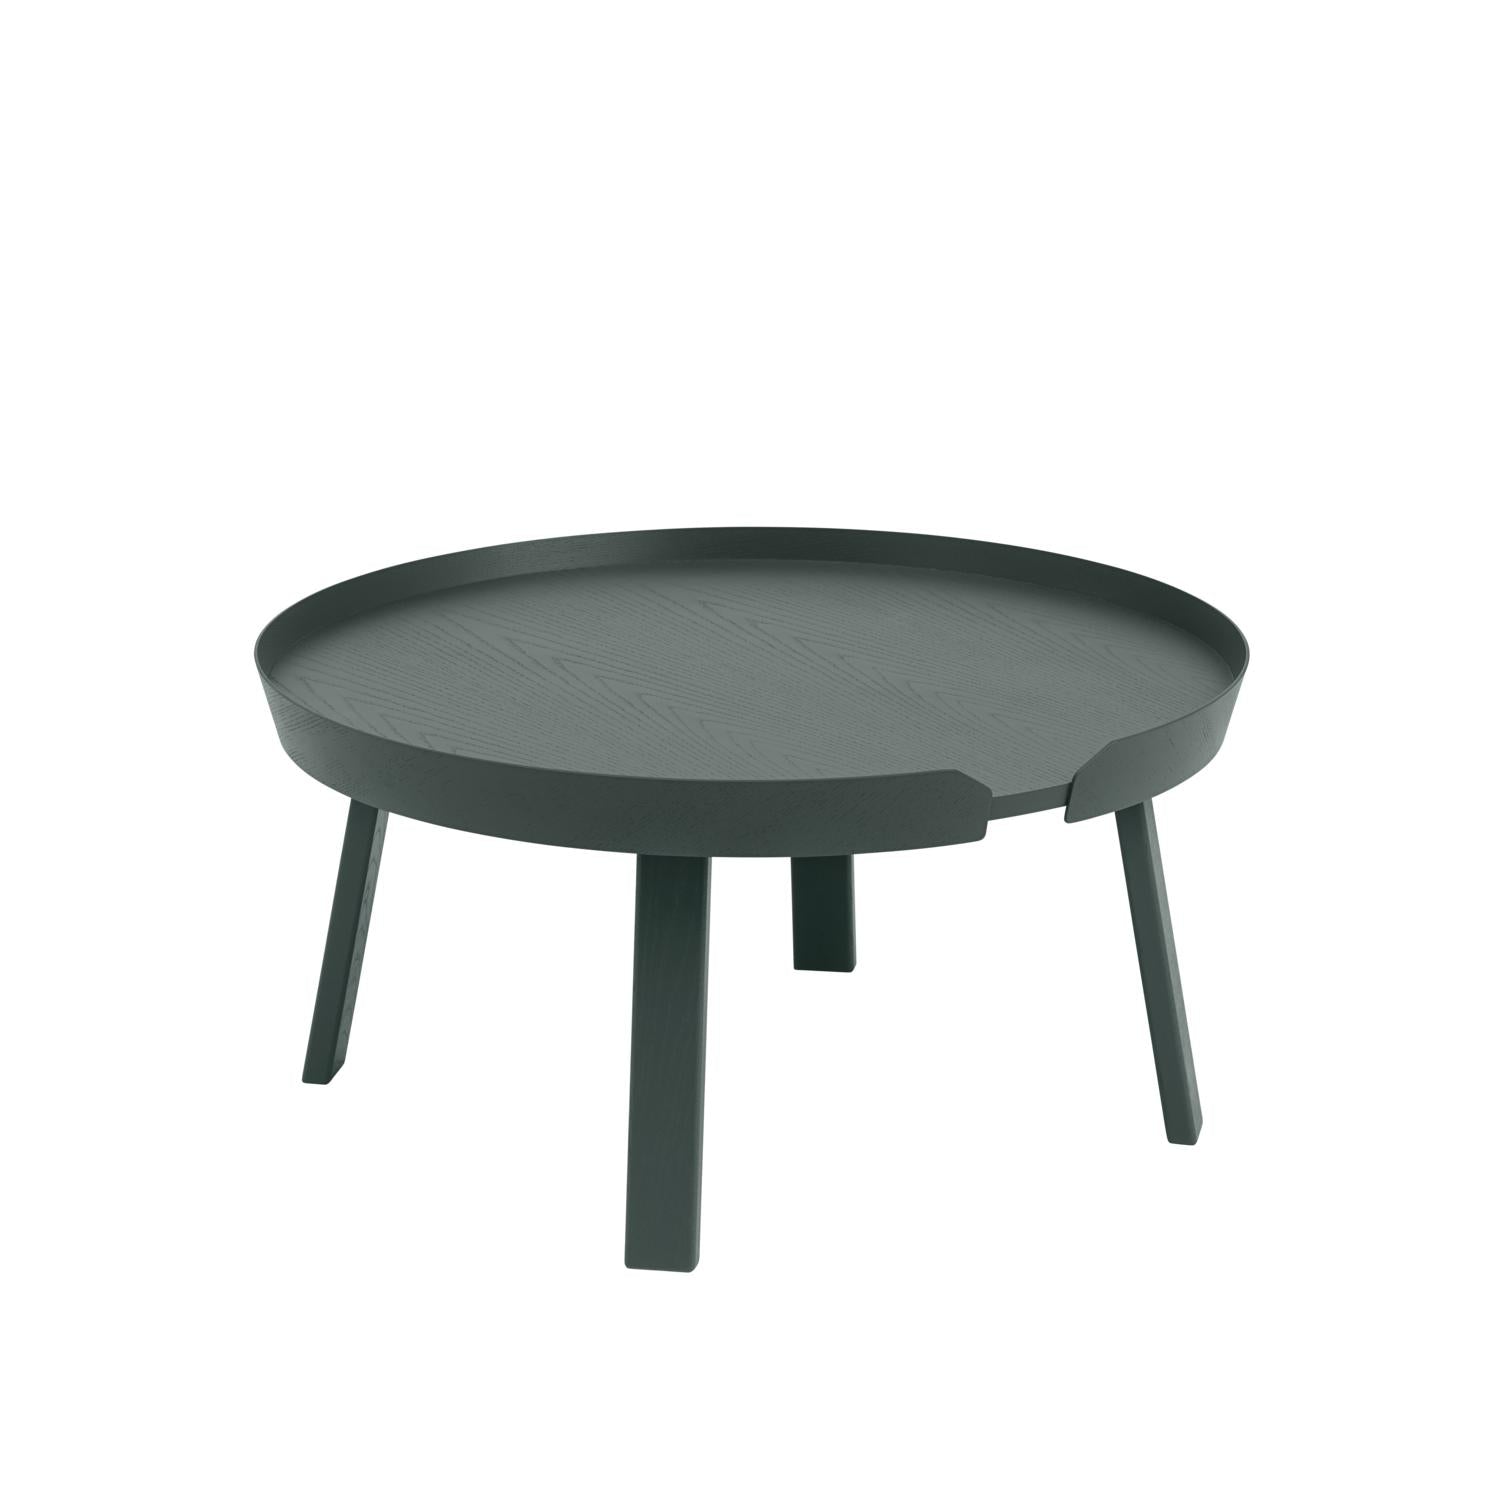 Muuto intorno al tavolino Ø 72 cm, verde scuro